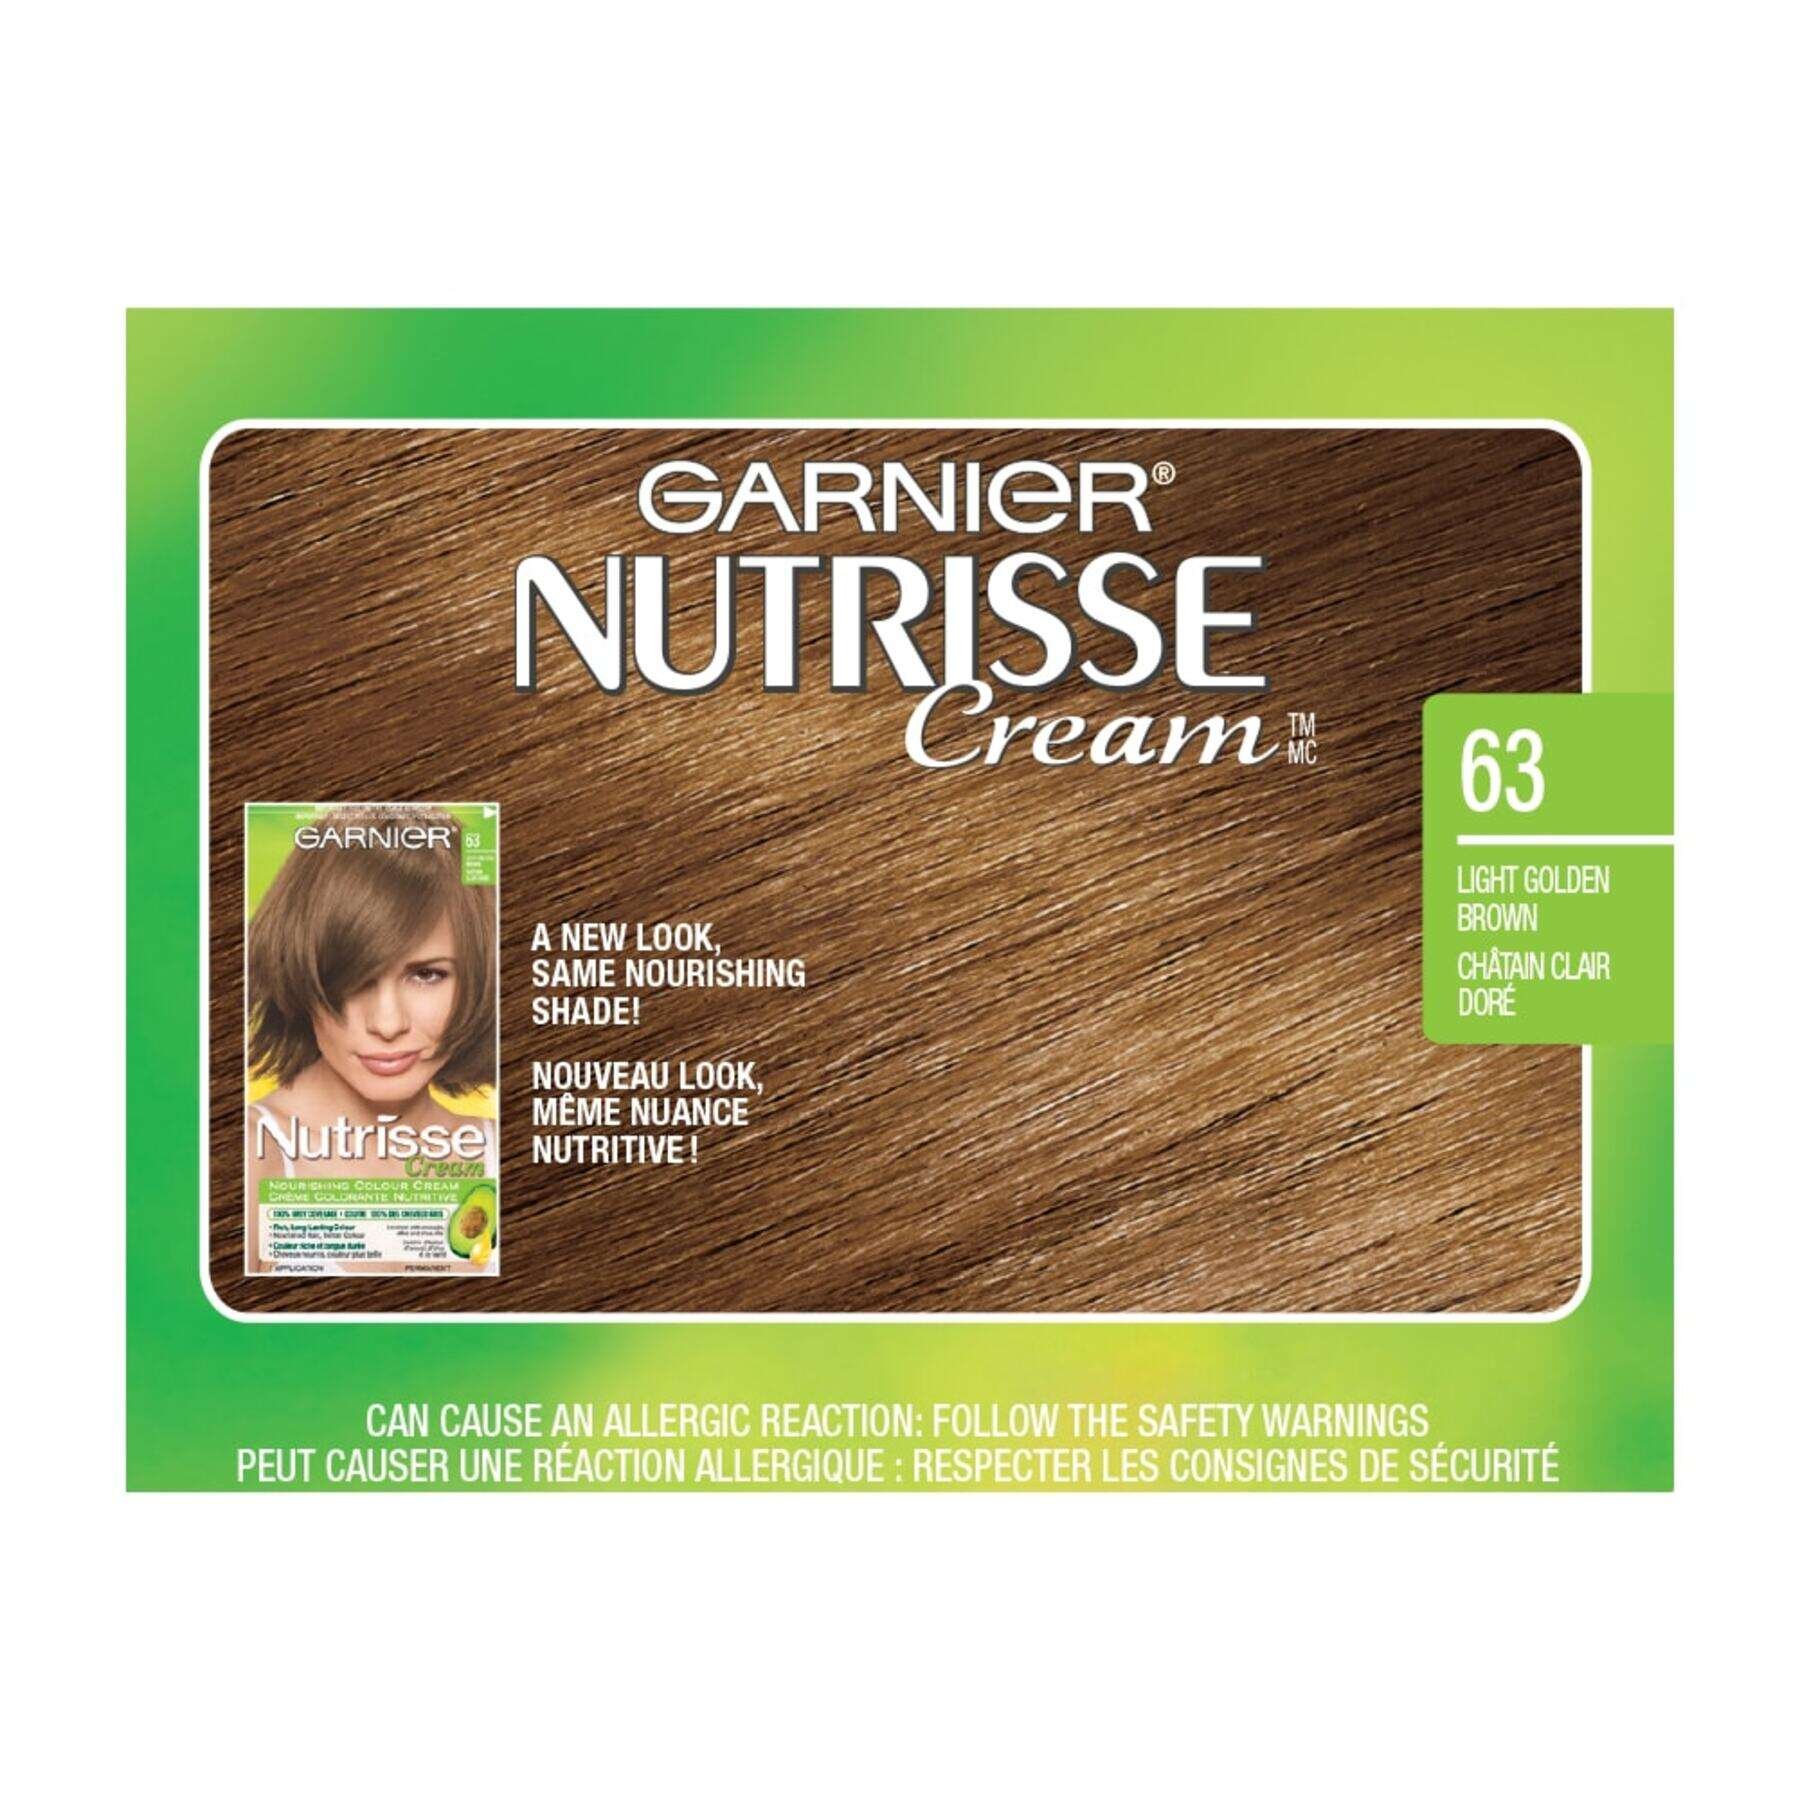 garnier hair dye nutrisse cream 63 light golden brown 0770103447162 swatch